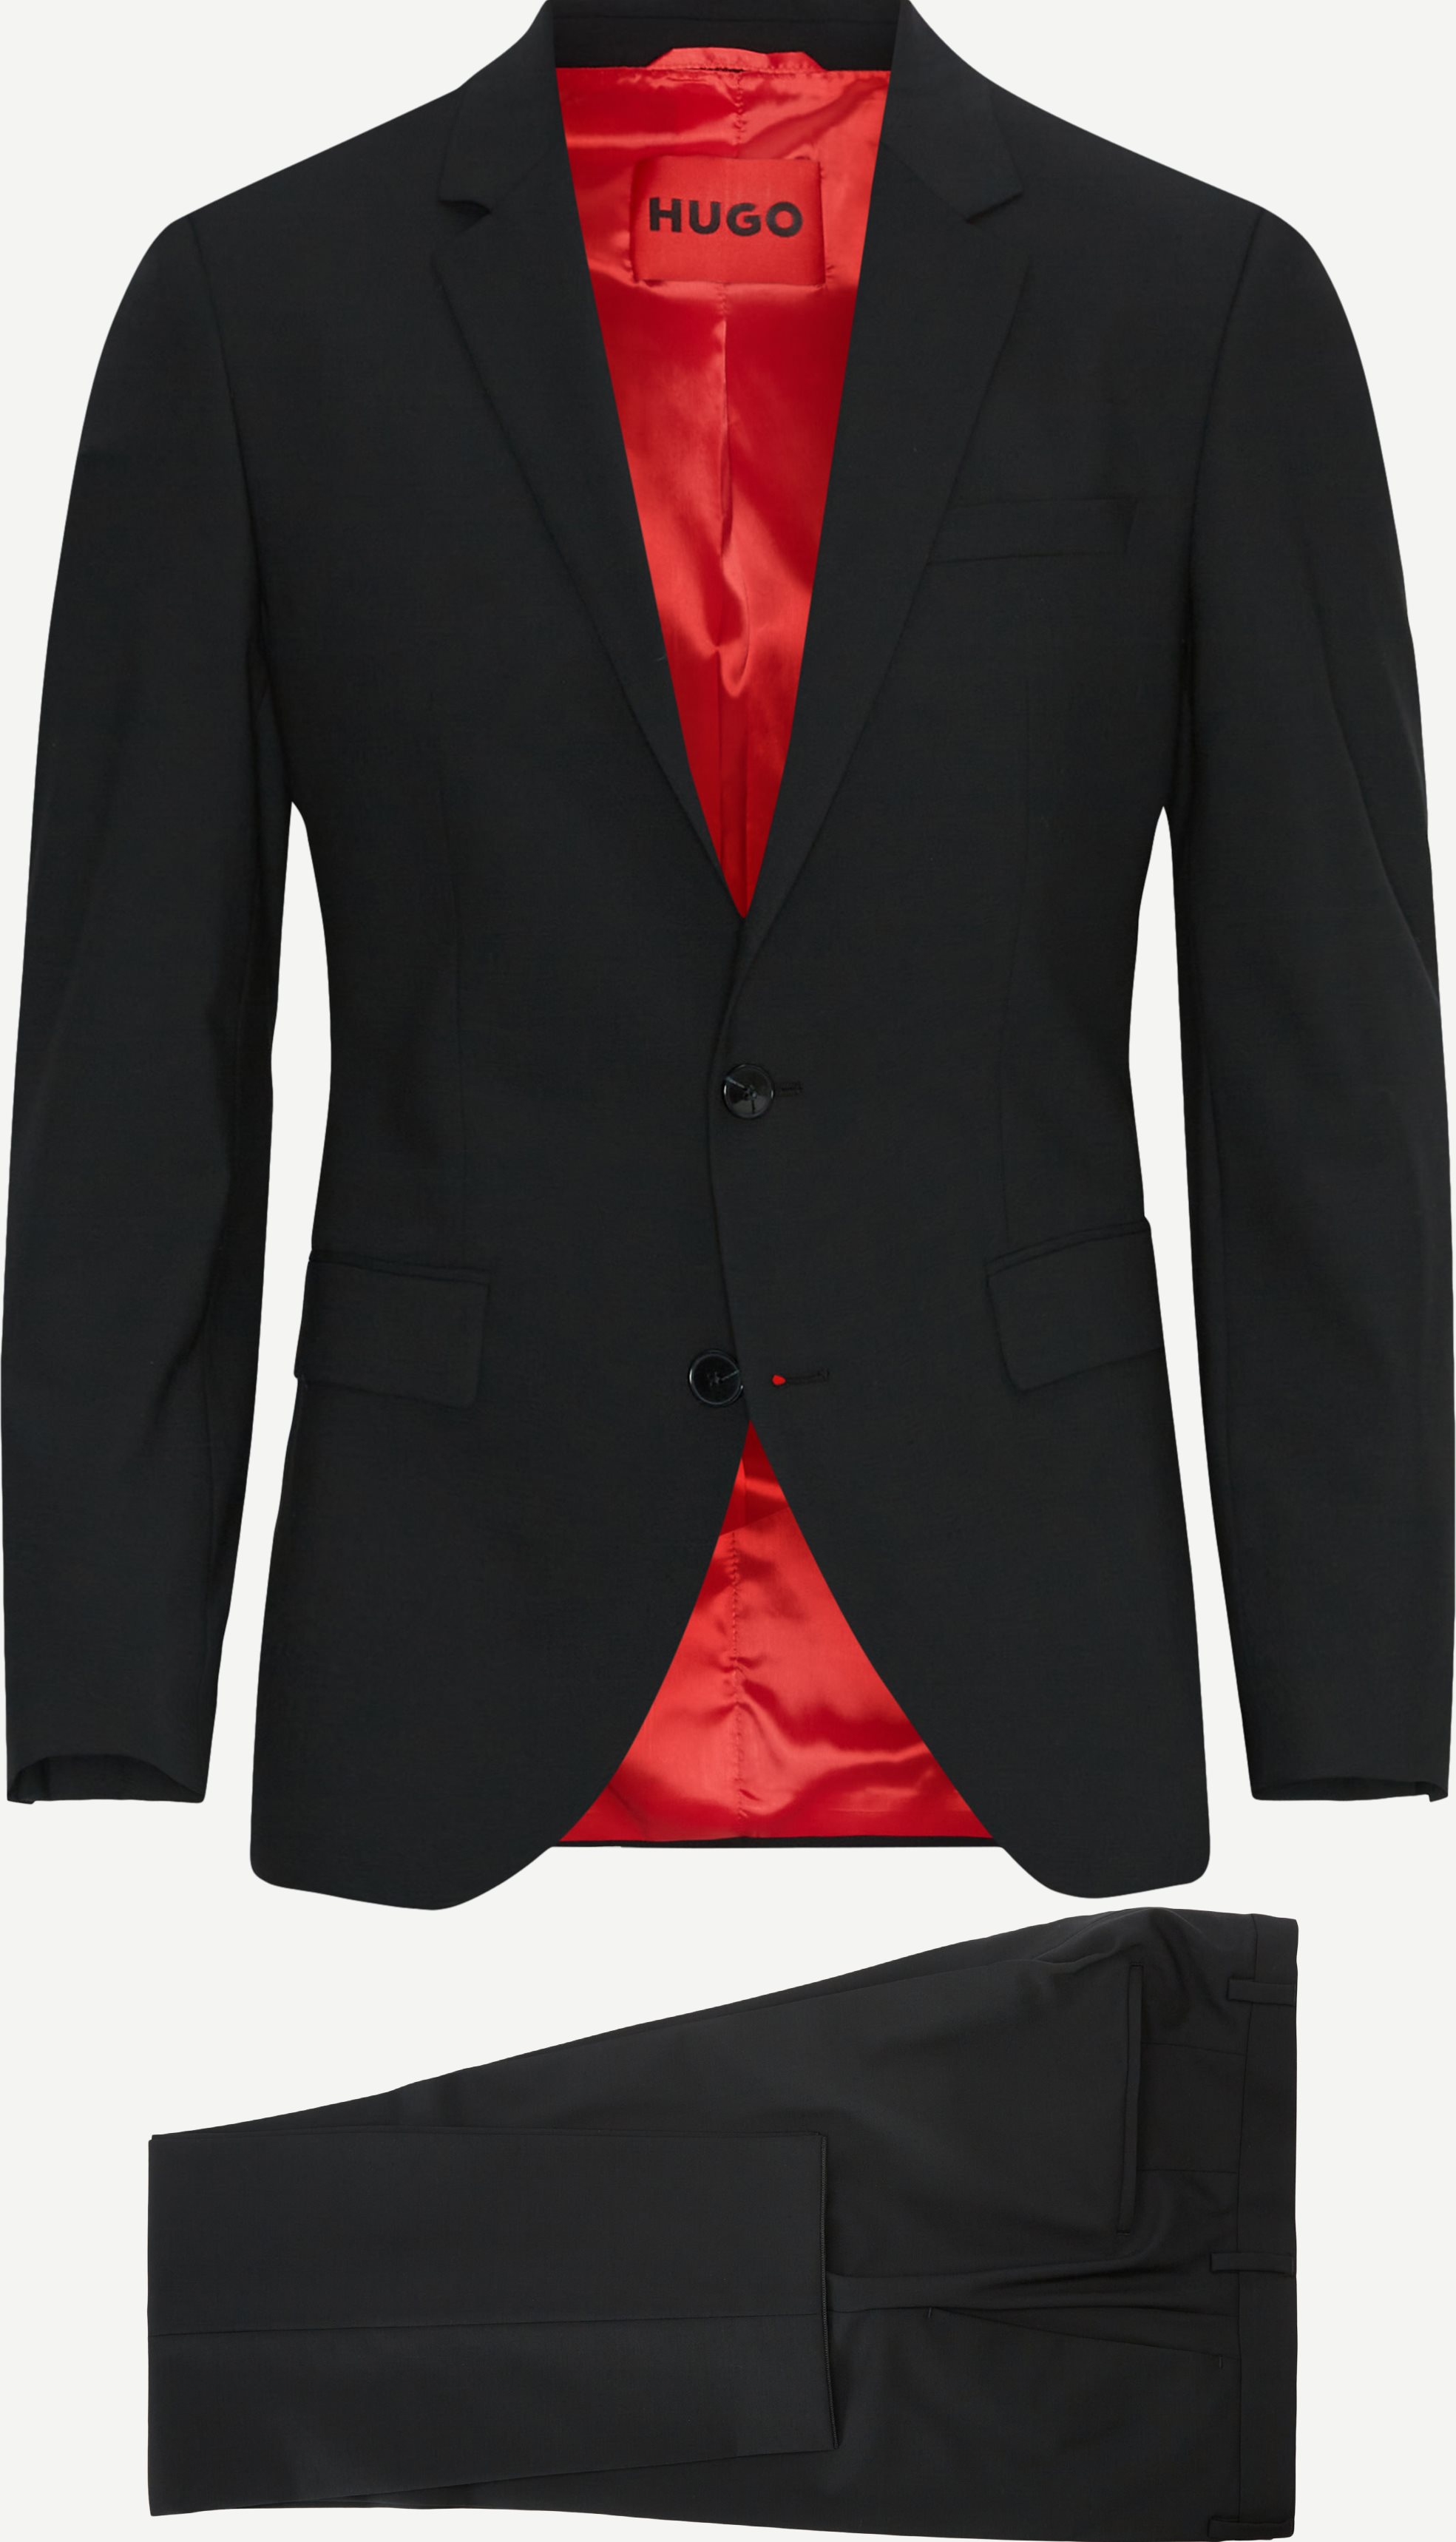 HUGO Suits 0239 HENRY/GETLIN Black